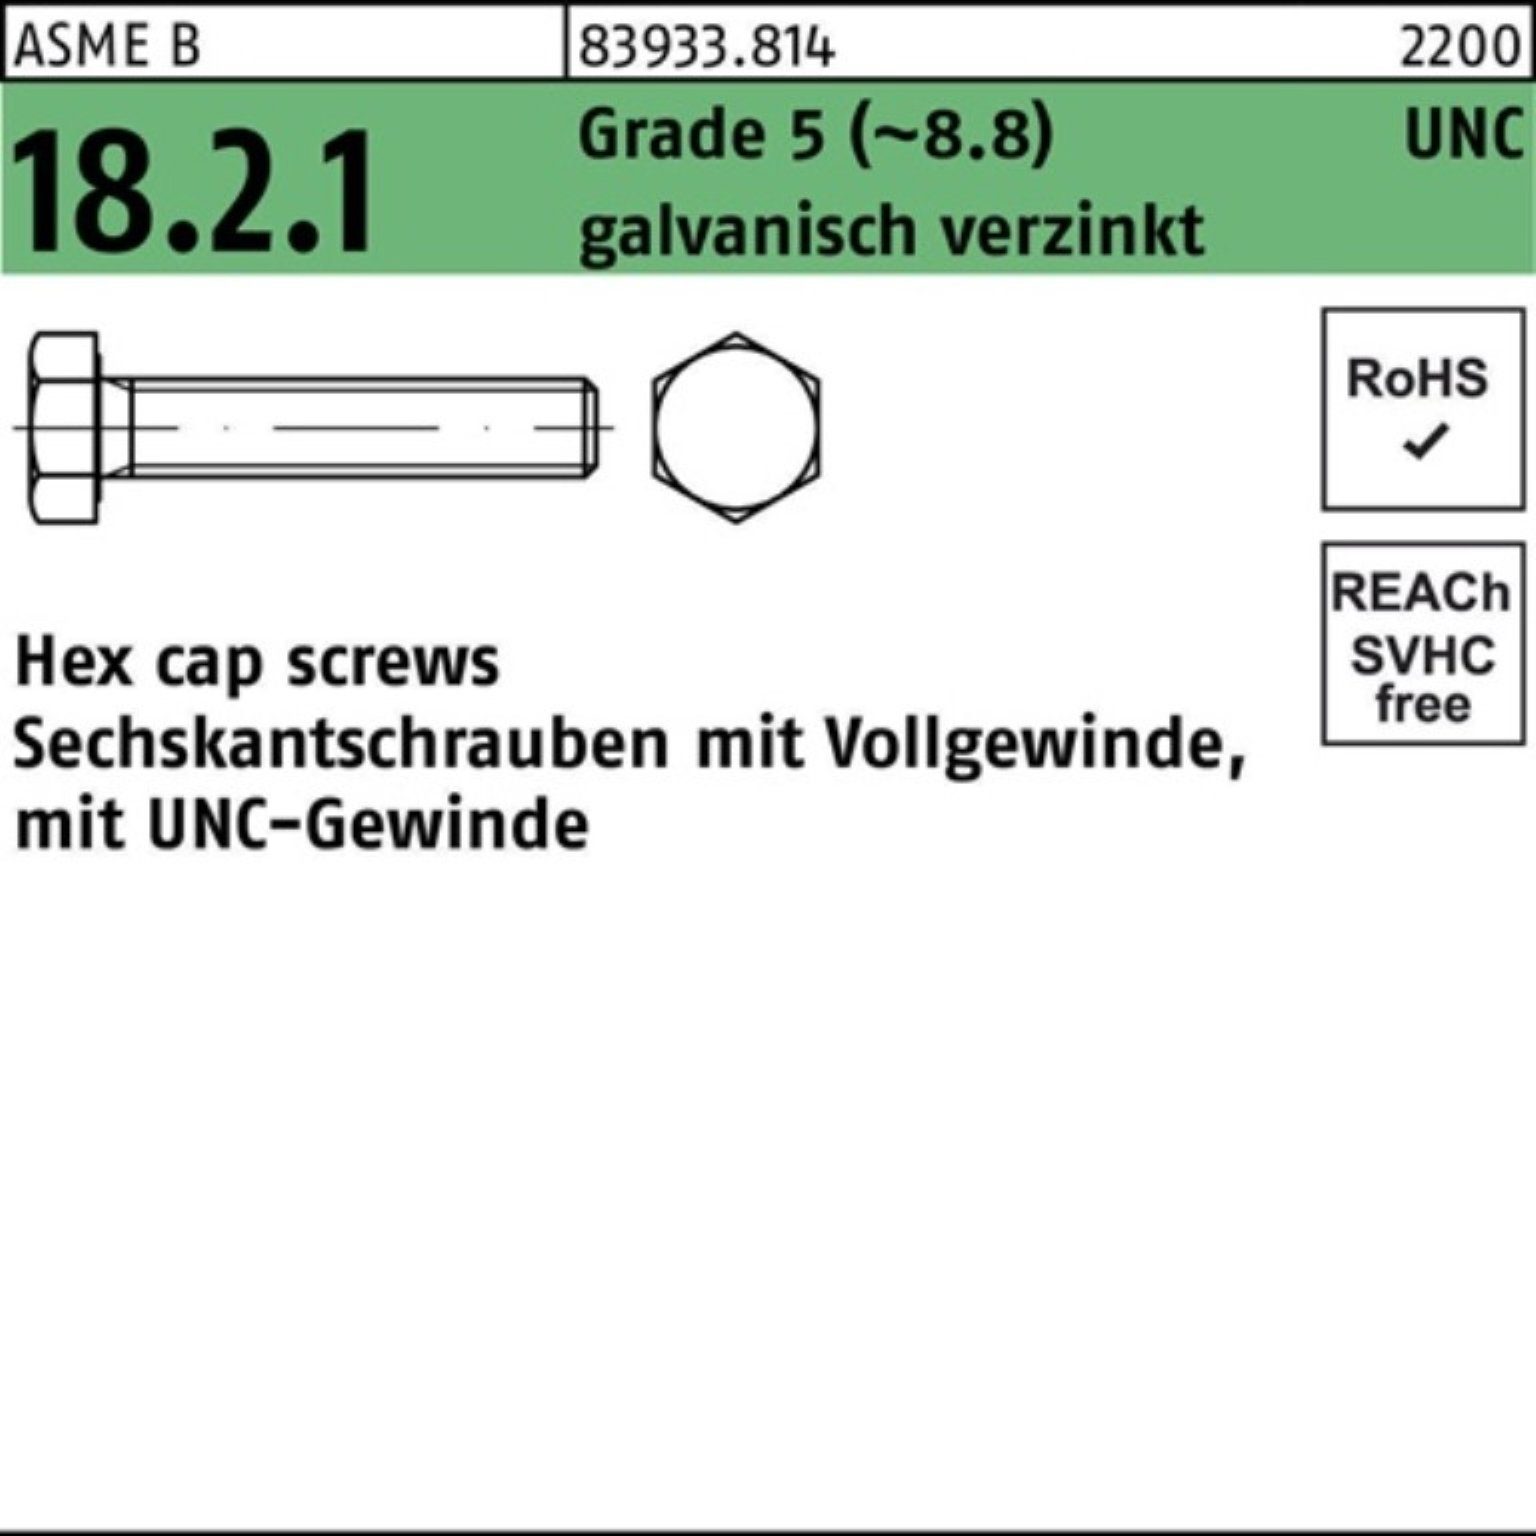 Reyher Sechskantschraube 100er Pack Sechskantschraube R 83933 UNC VG 1/4x1/2 Grade 5 (8.8) gal